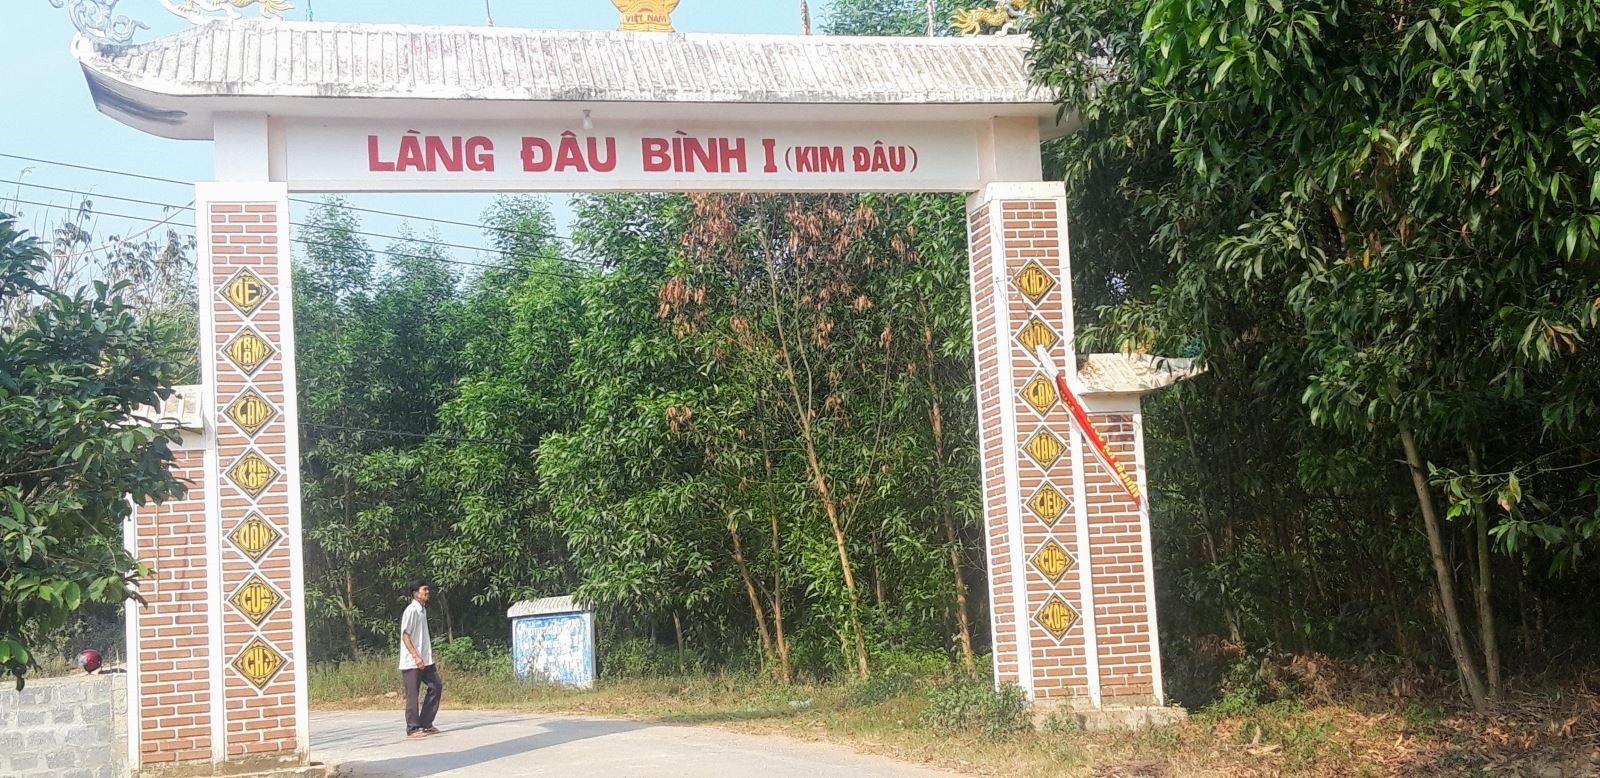 Cổng làng Đầu Binh1( Kim Đâu)